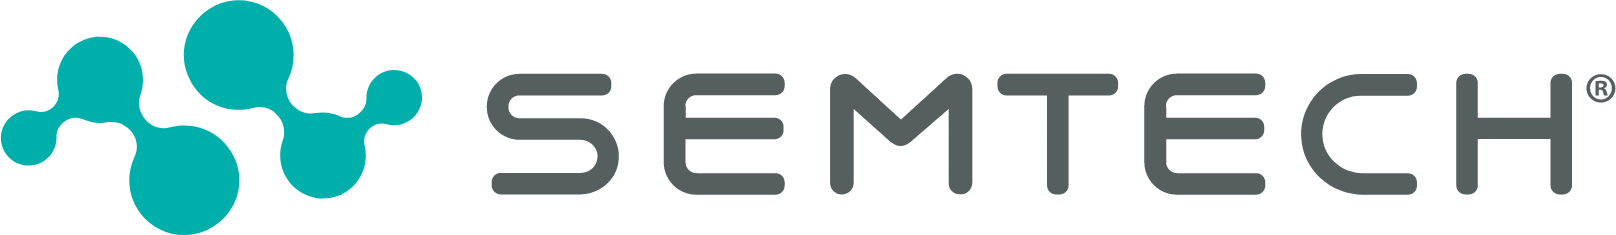 Semtech logo large (transparent PNG)